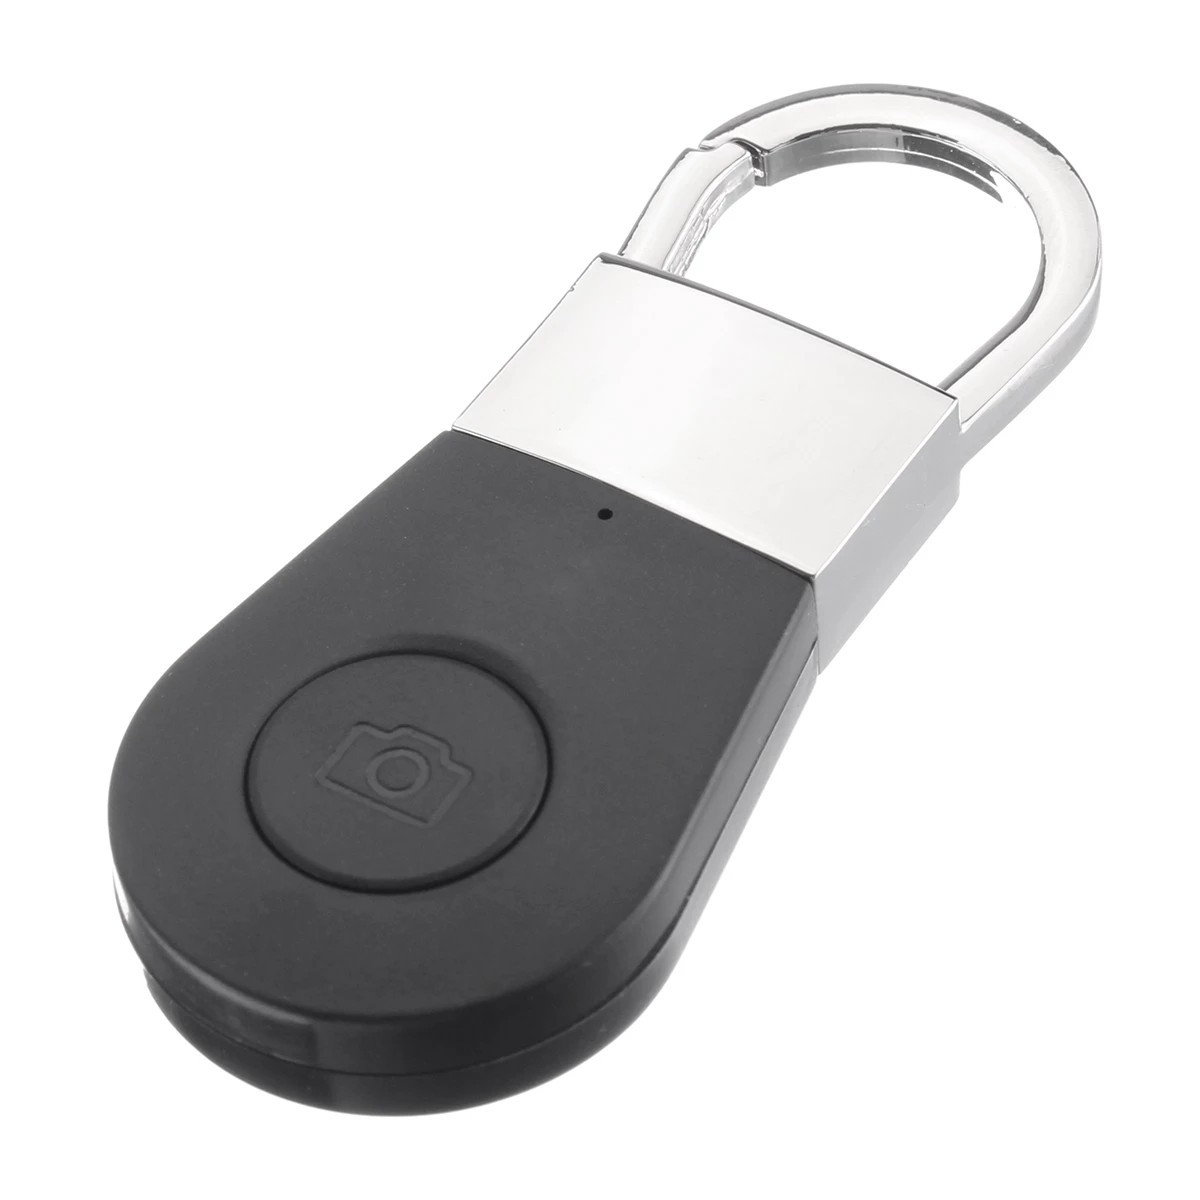 Key finder - buscador bluetooth para llaves, teléfono móvil, etc.